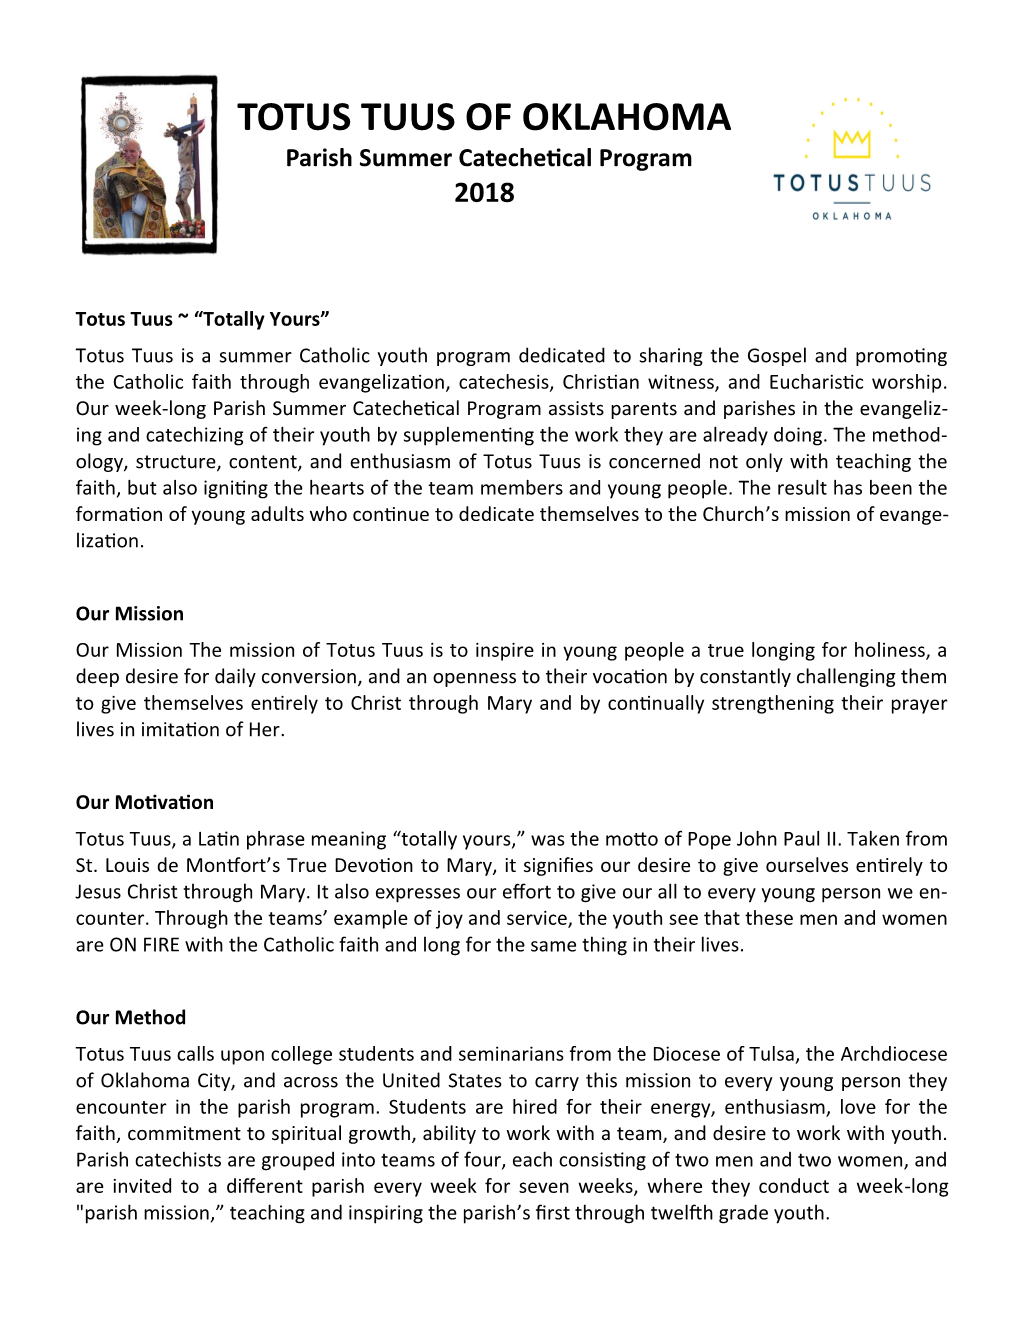 TOTUS TUUS of OKLAHOMA Parish Summer Catechetical Program 2018